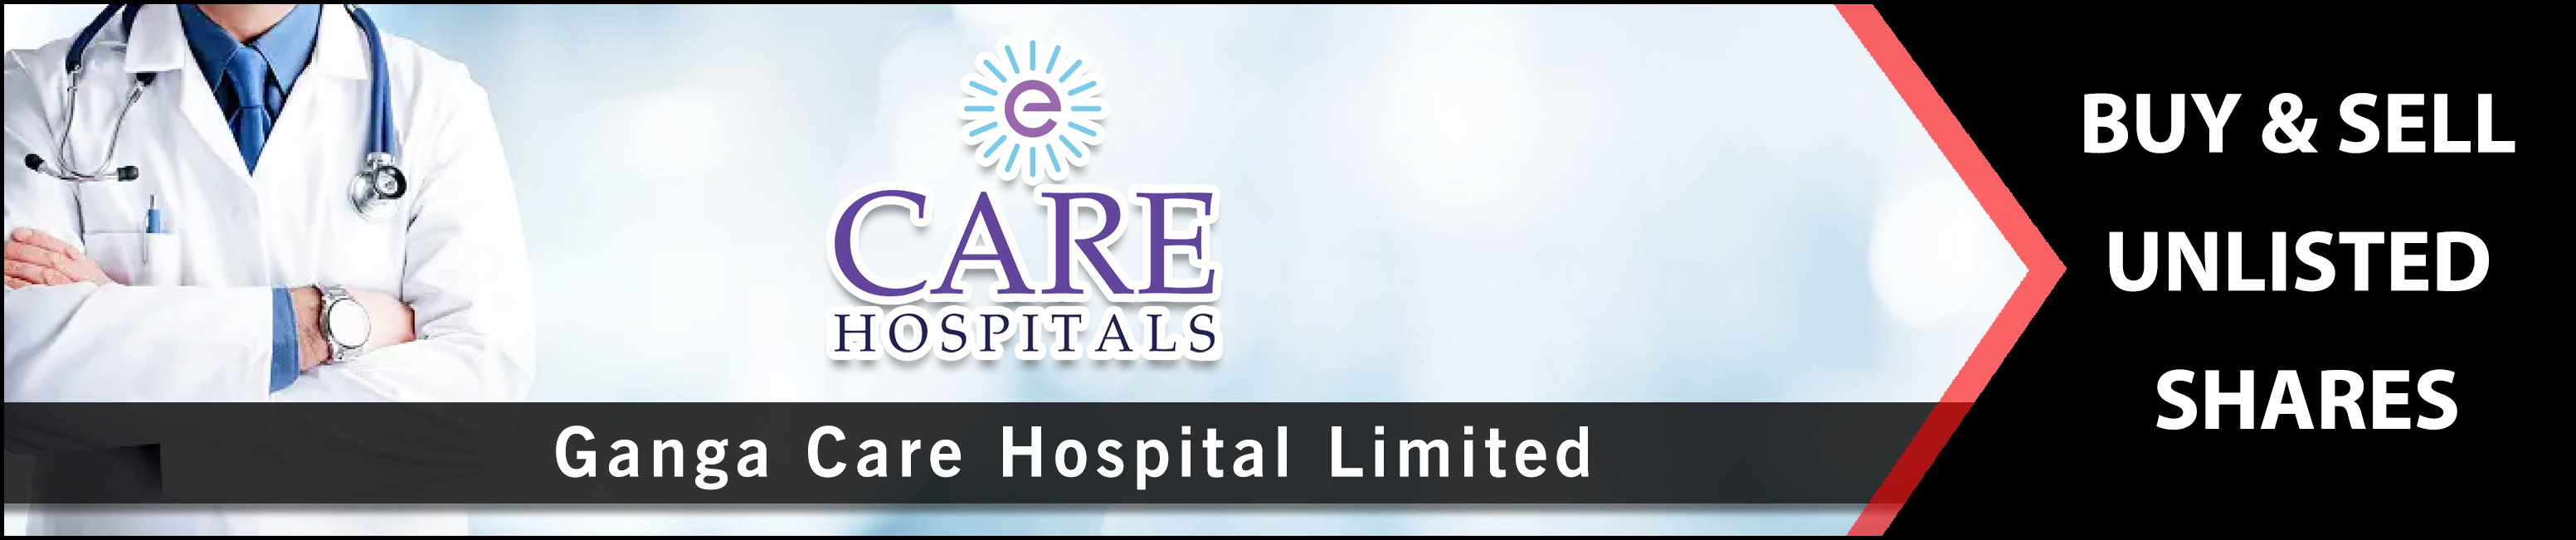 Ganga Care Hospital Limited